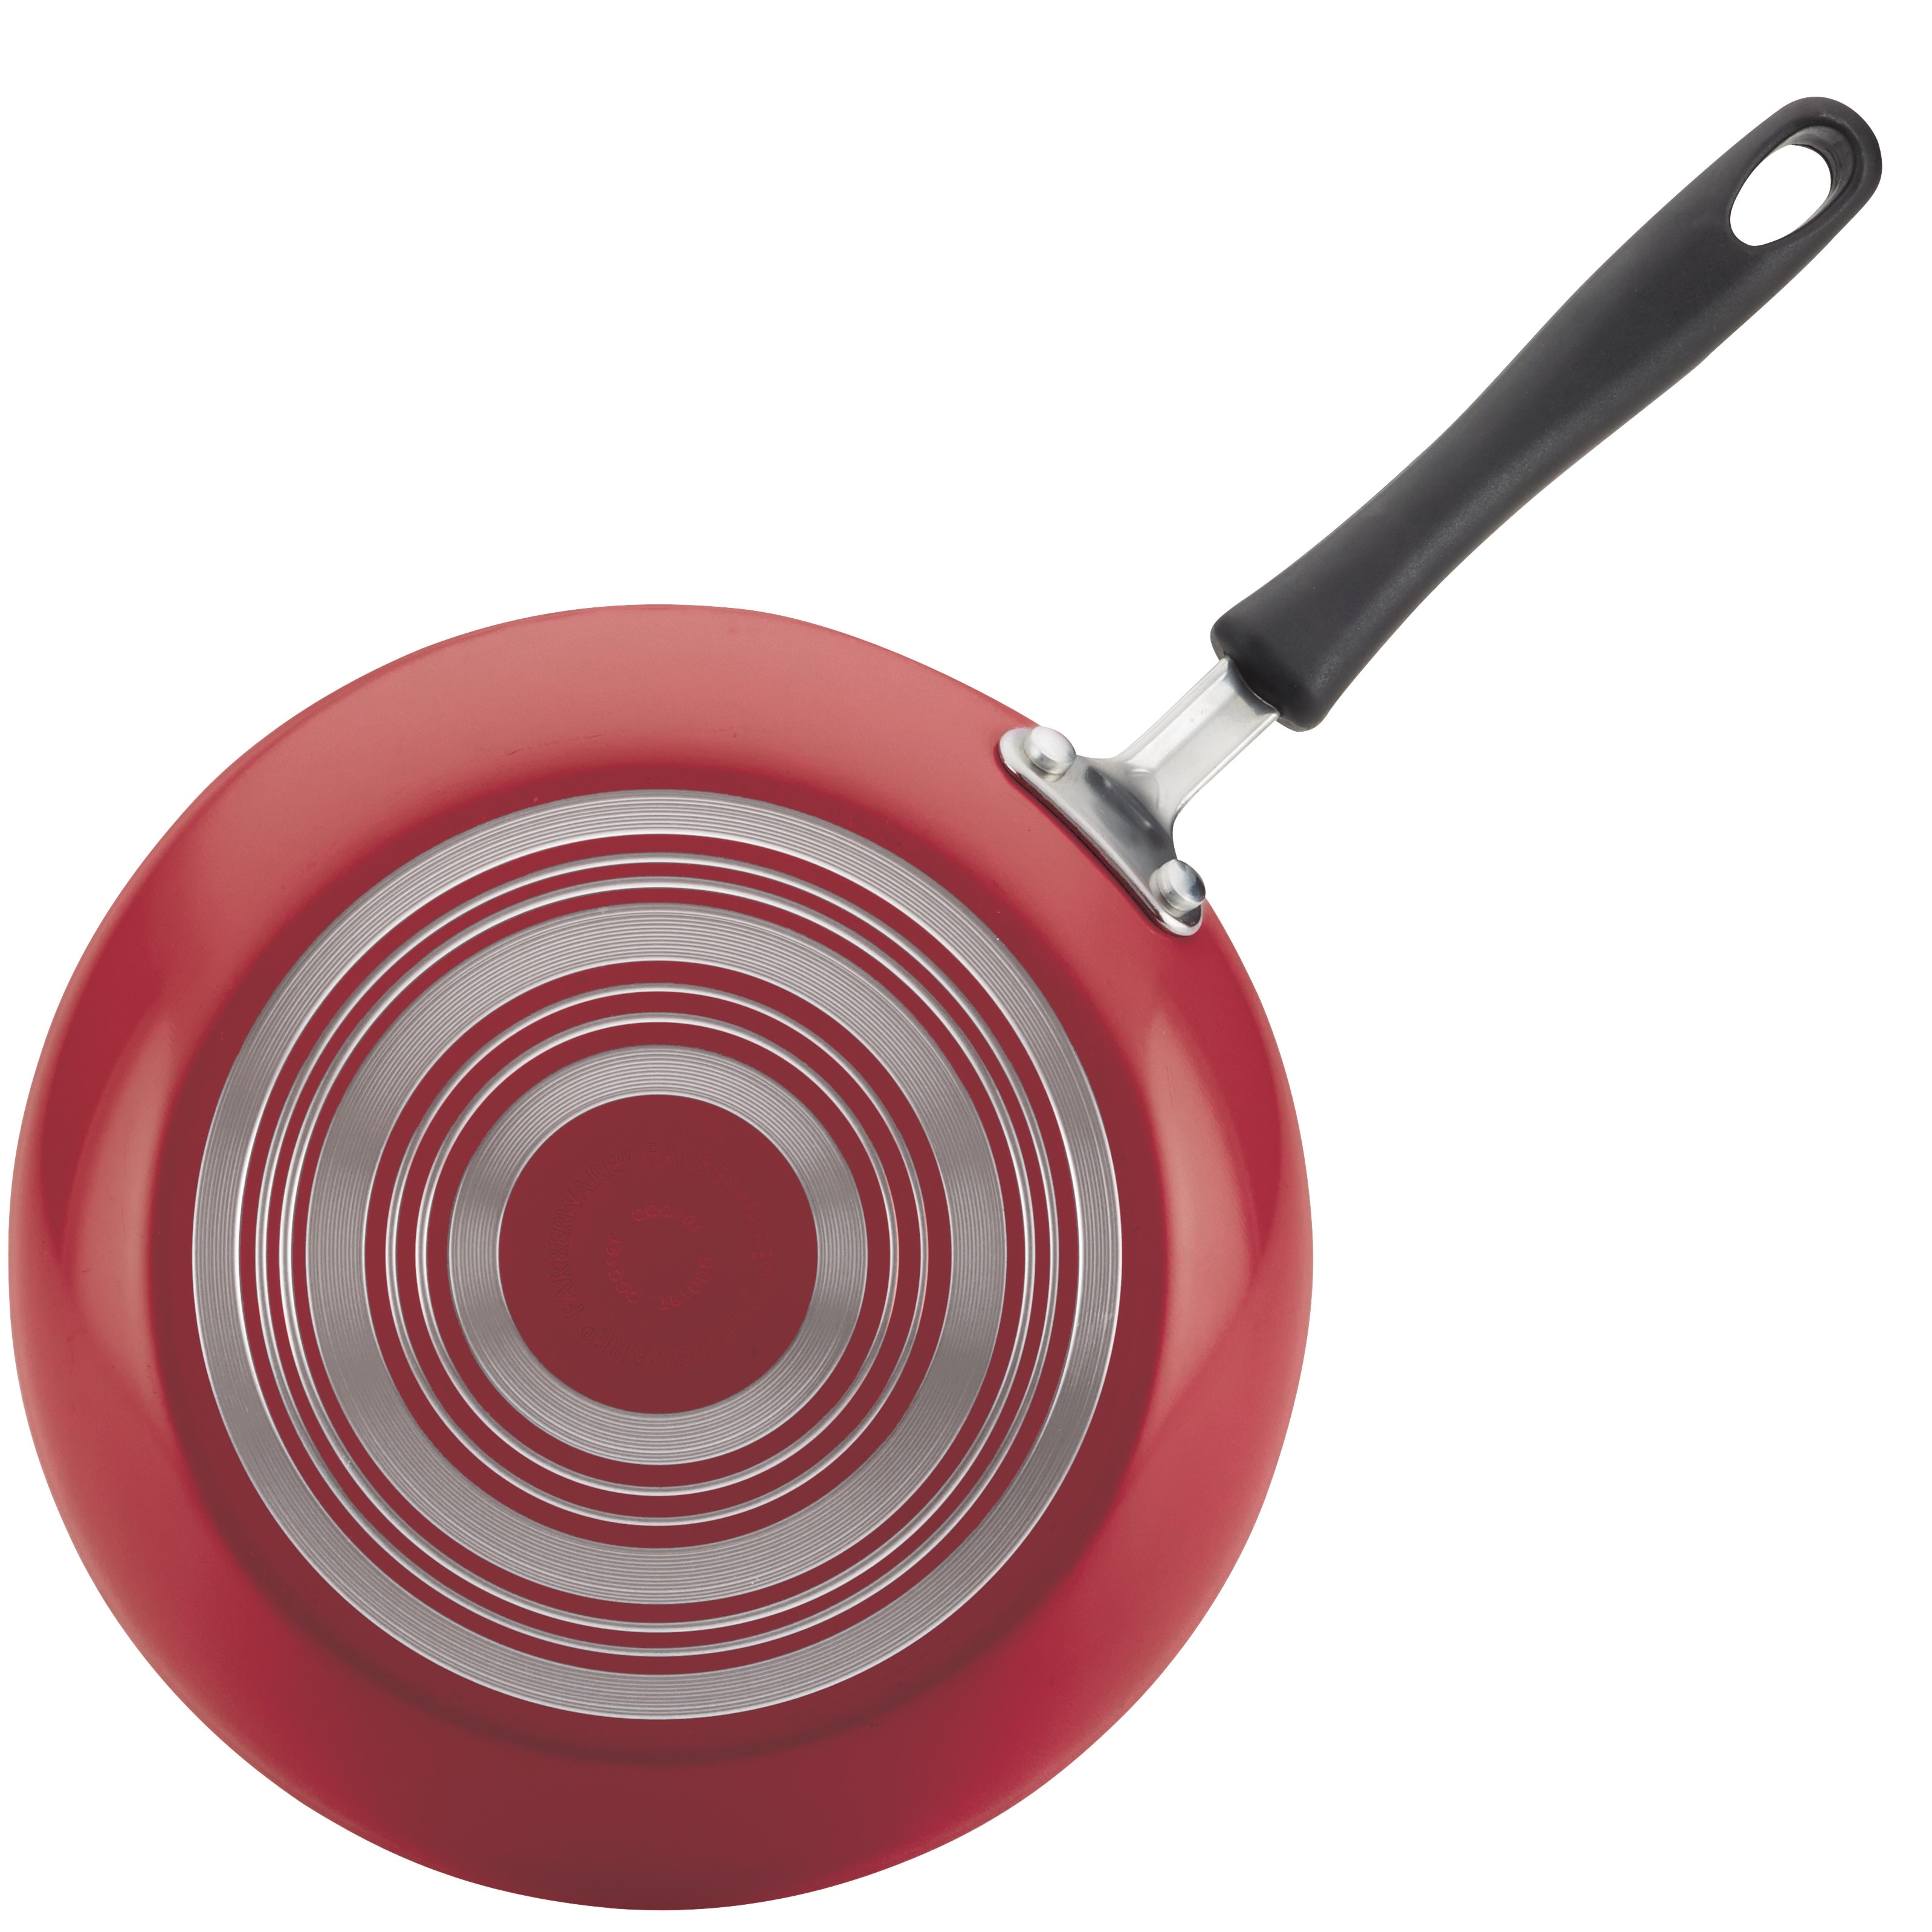 Farberware 15-Piece Cookstart Nonstick Aluminum Cookware Set - Red